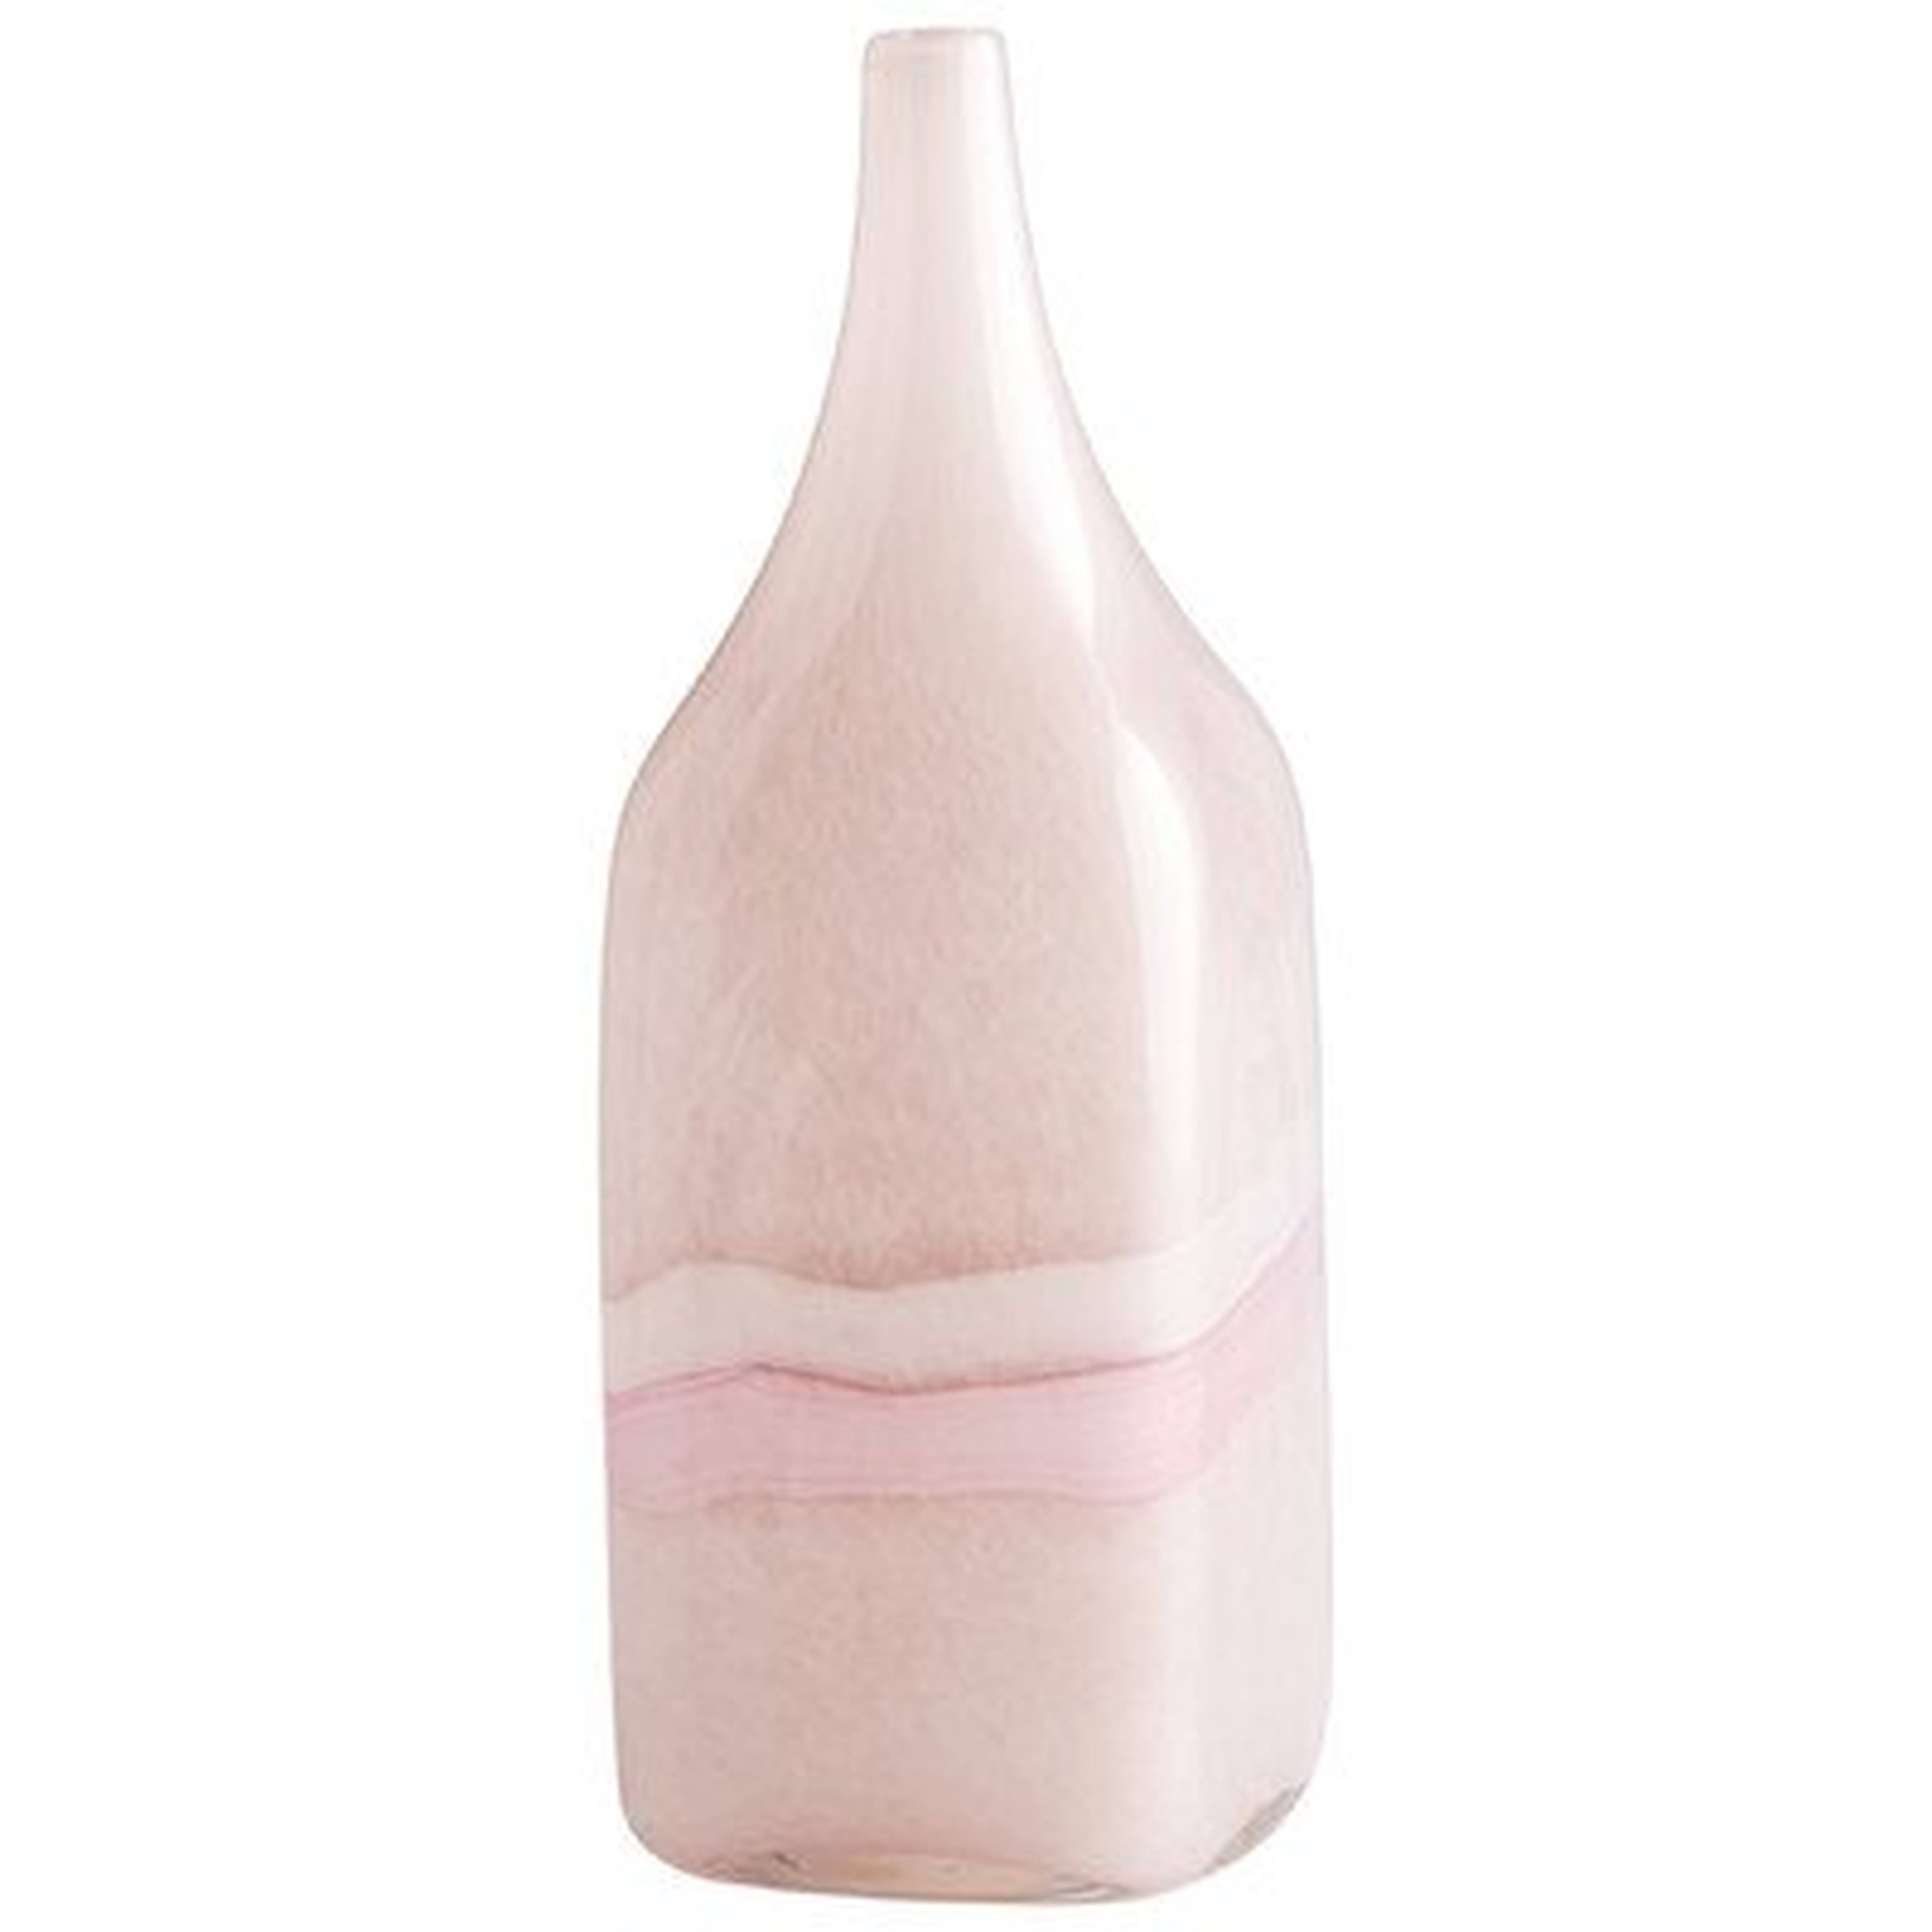 Tiffany Vase, Medium - Wayfair